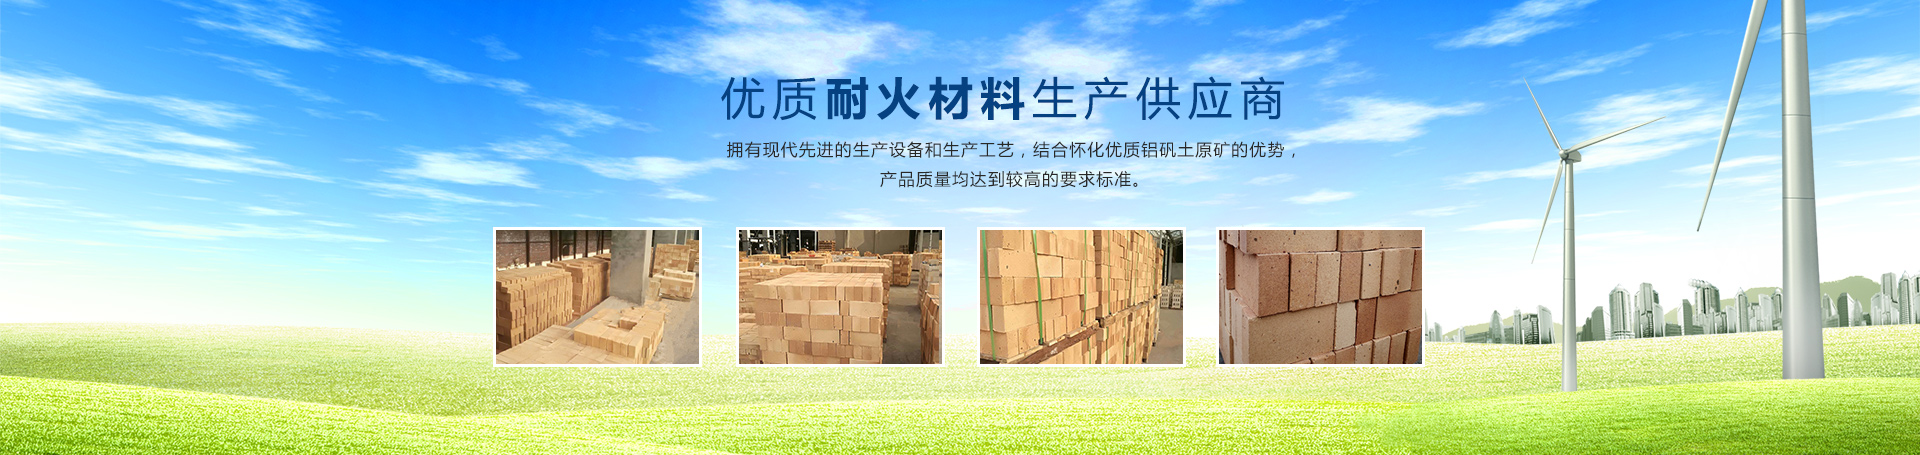 天博·（中国）|官方网站-TB SPORTS天博网站
_耐火砖|石棉板|怀化耐火材料哪里好